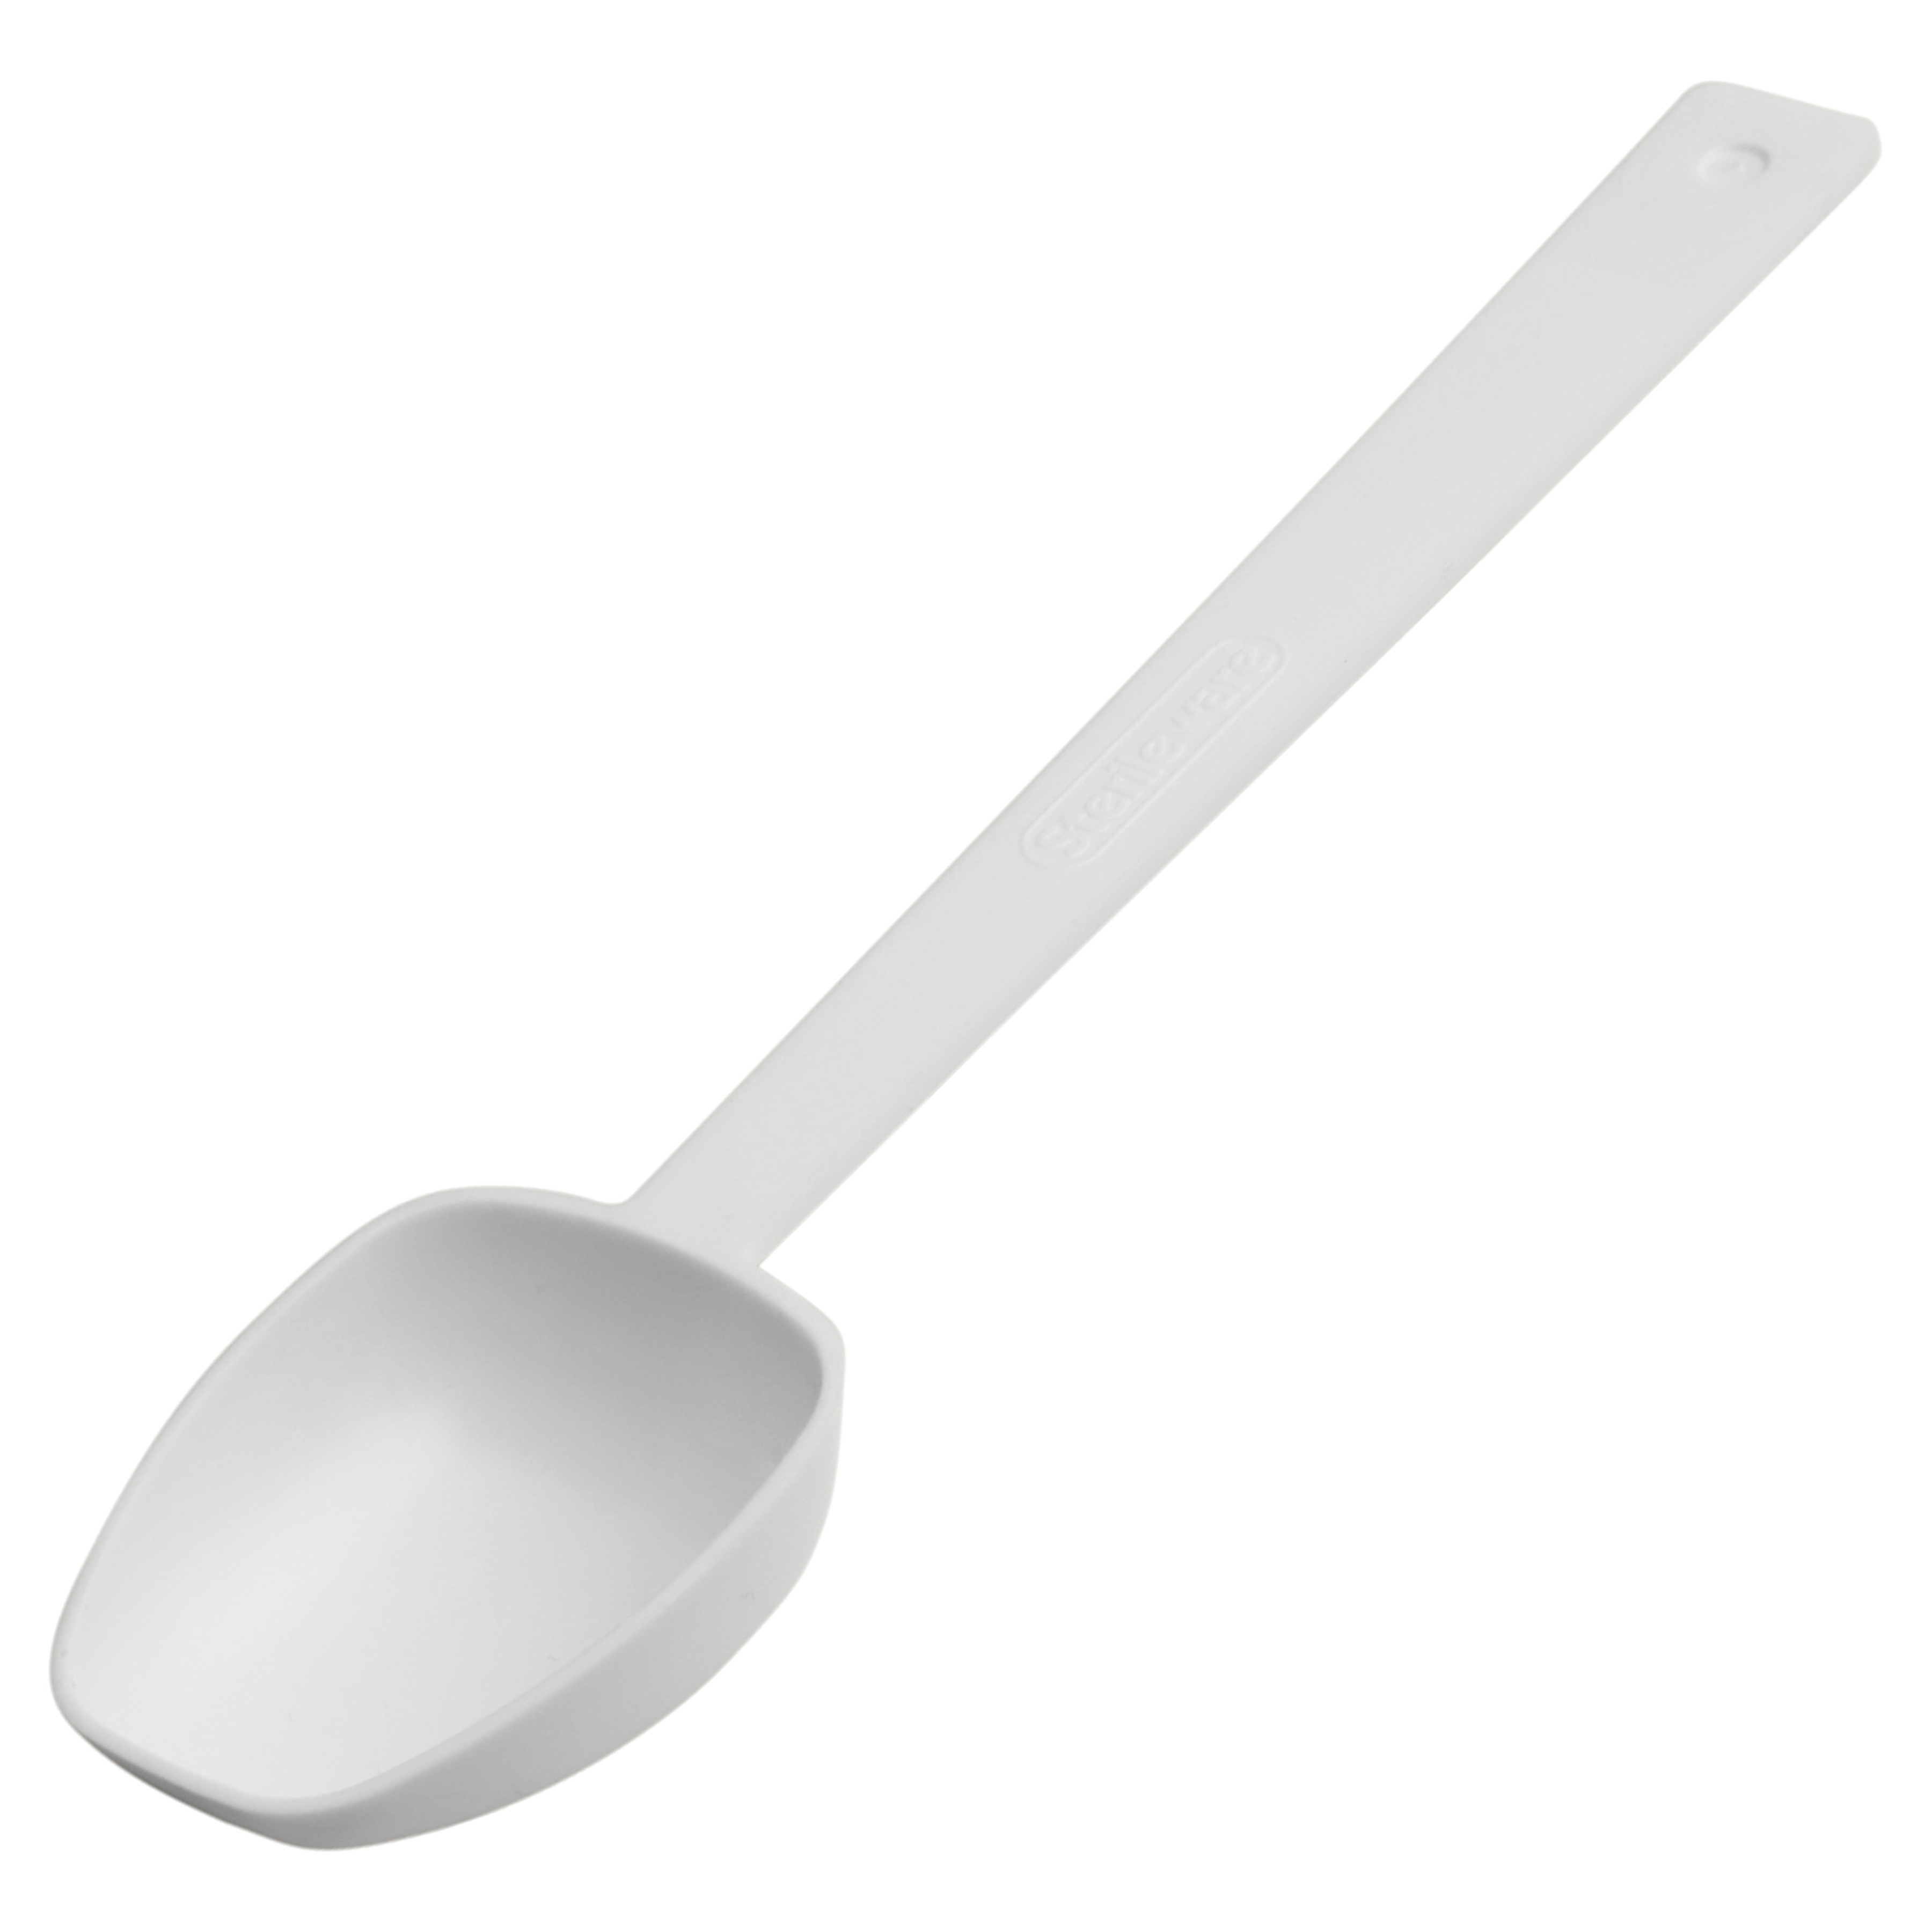 SP Bel-Art Long Handle Sampling Spoon; 14.79ml (3 tsp), Non-Sterile Plastic (Pack of 12)